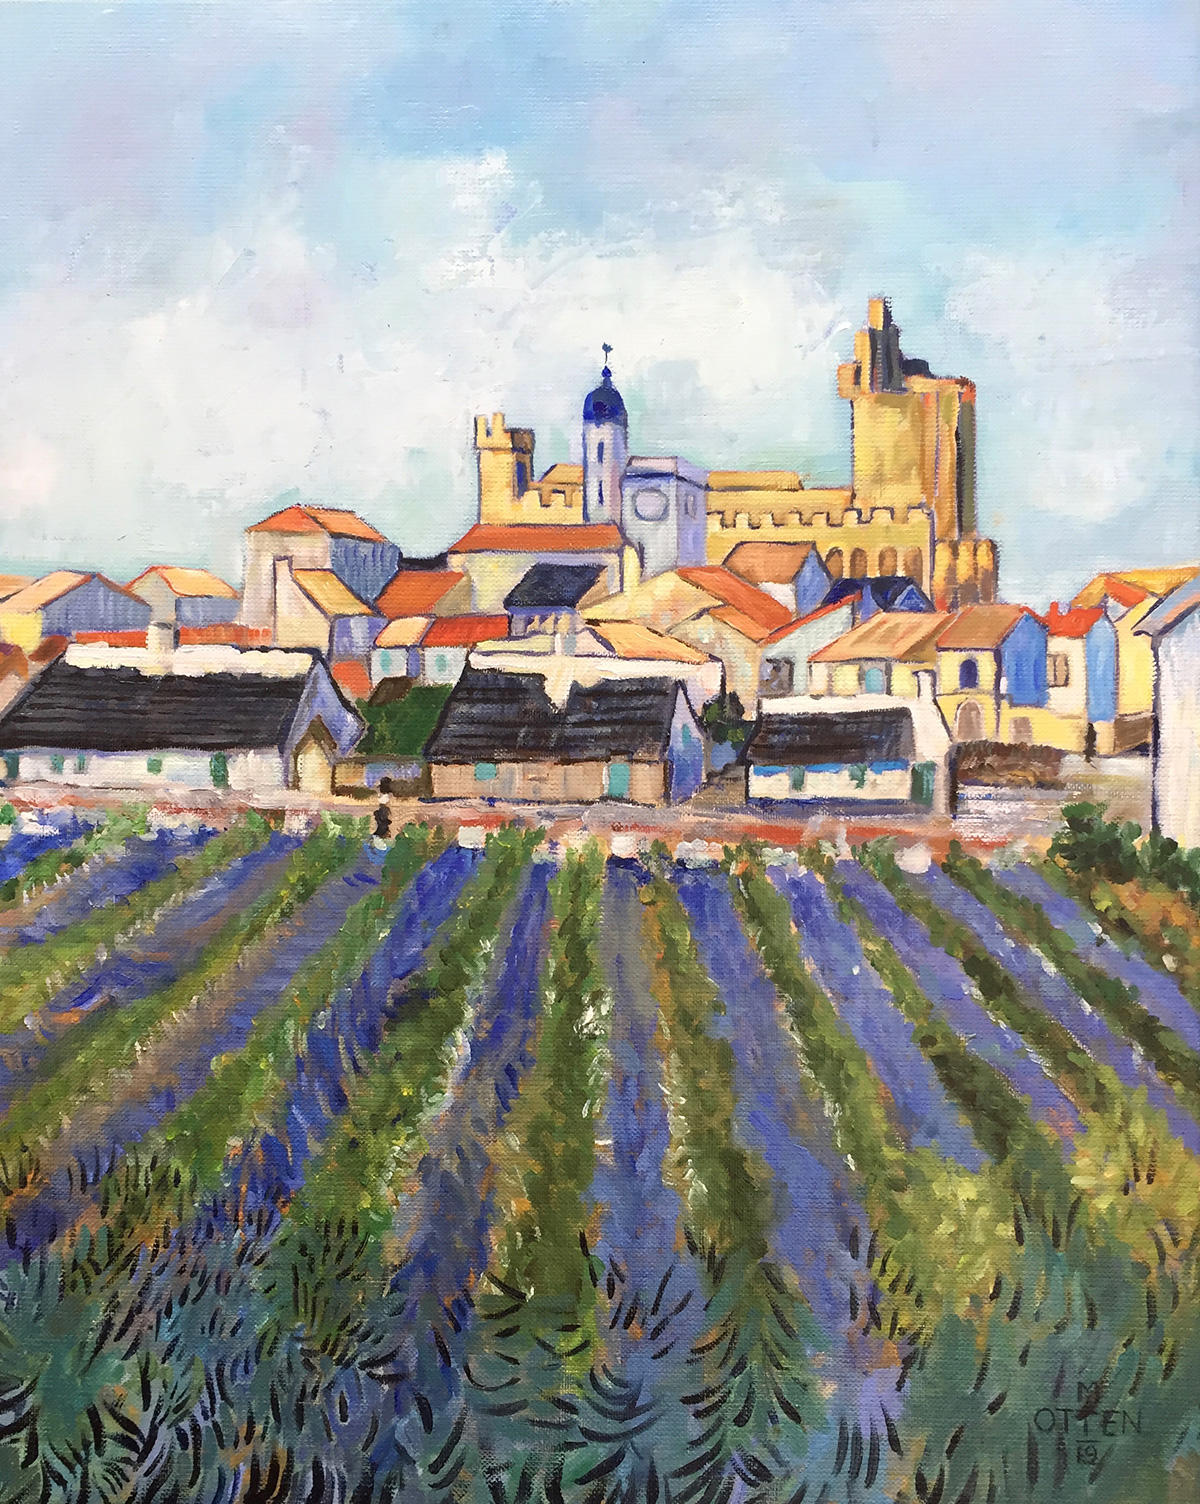 zicht op het dorpje Saintes Marie de la mer me daarvoor een bloeiend lavendel veld